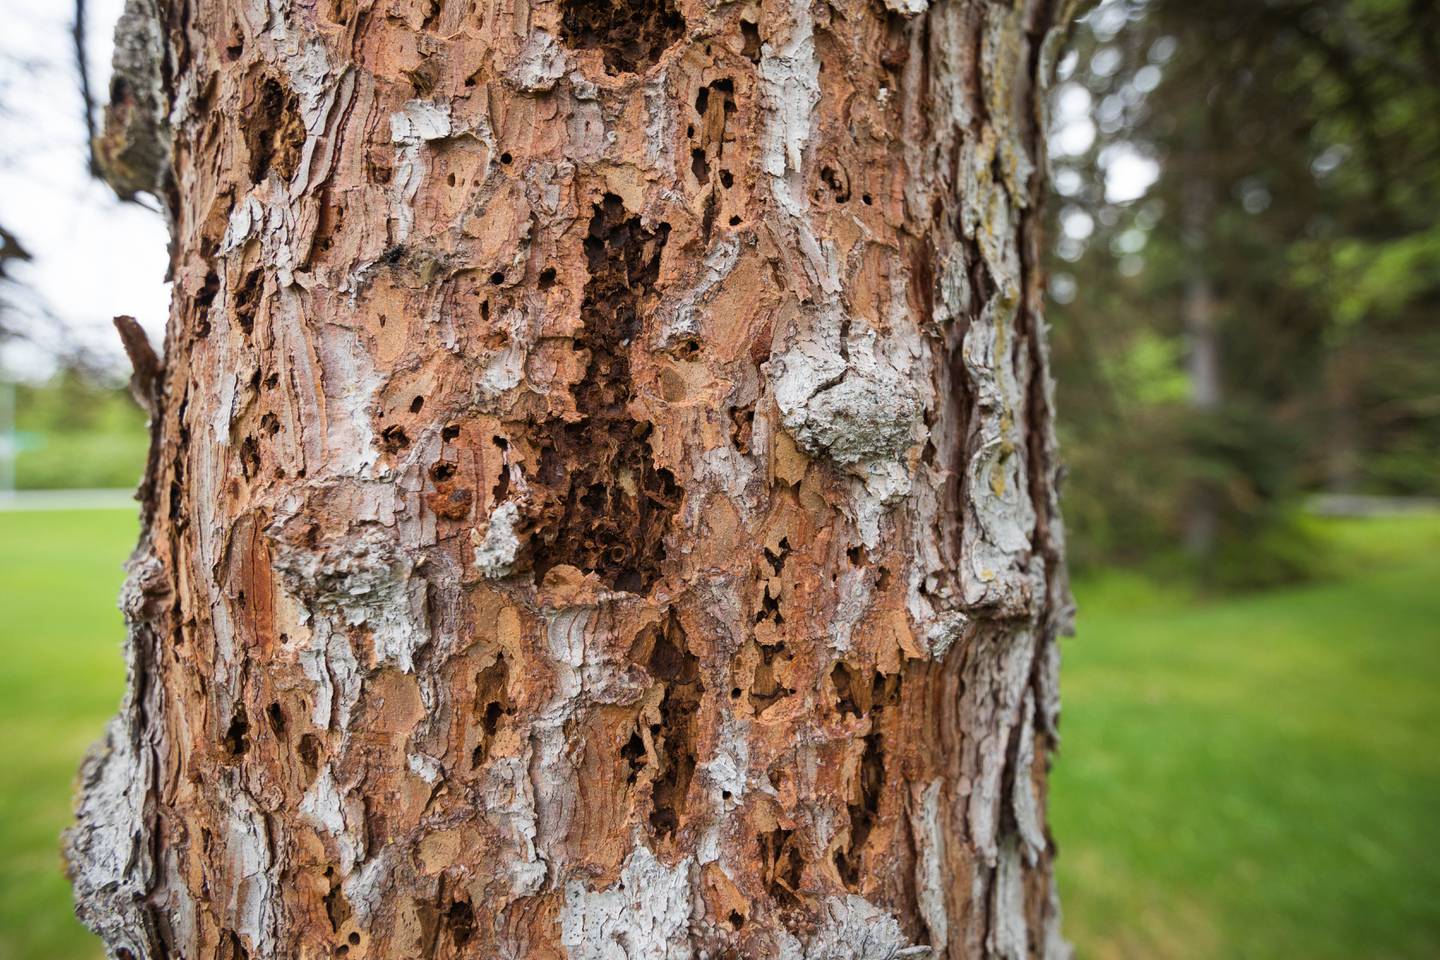 spruce, spruce bark beetle, spruce bark beetles, spruce beetle, spruce beetles, spruce tree, spruce trees